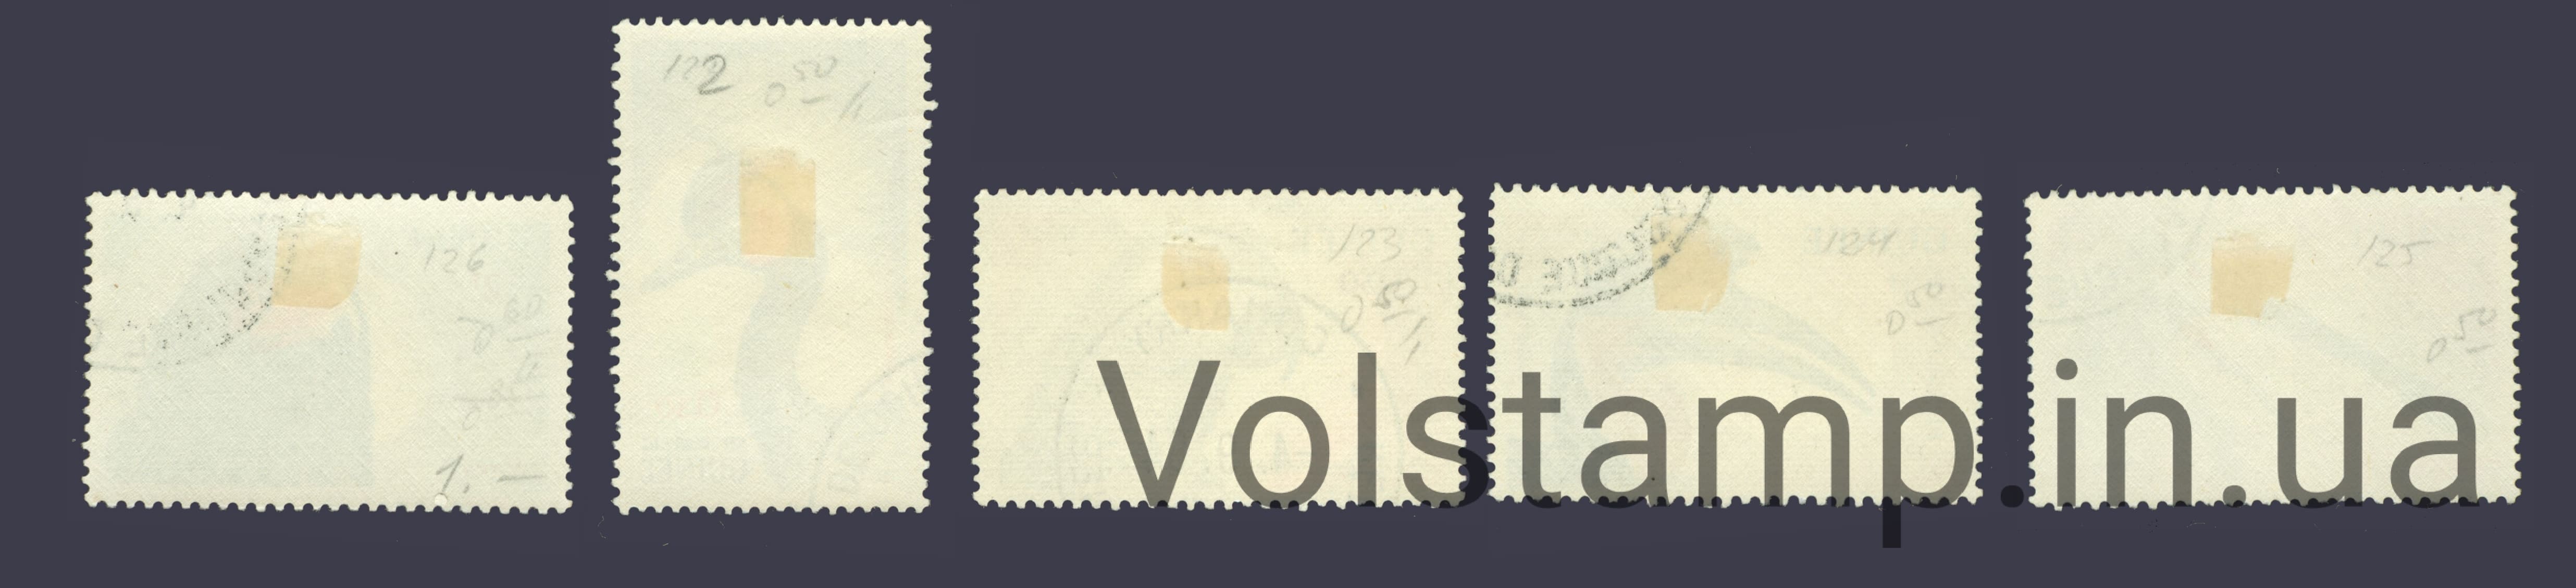 1962 Гвинея Не полная серия марок (Птицы) Гашеные с наклейкой №149-153